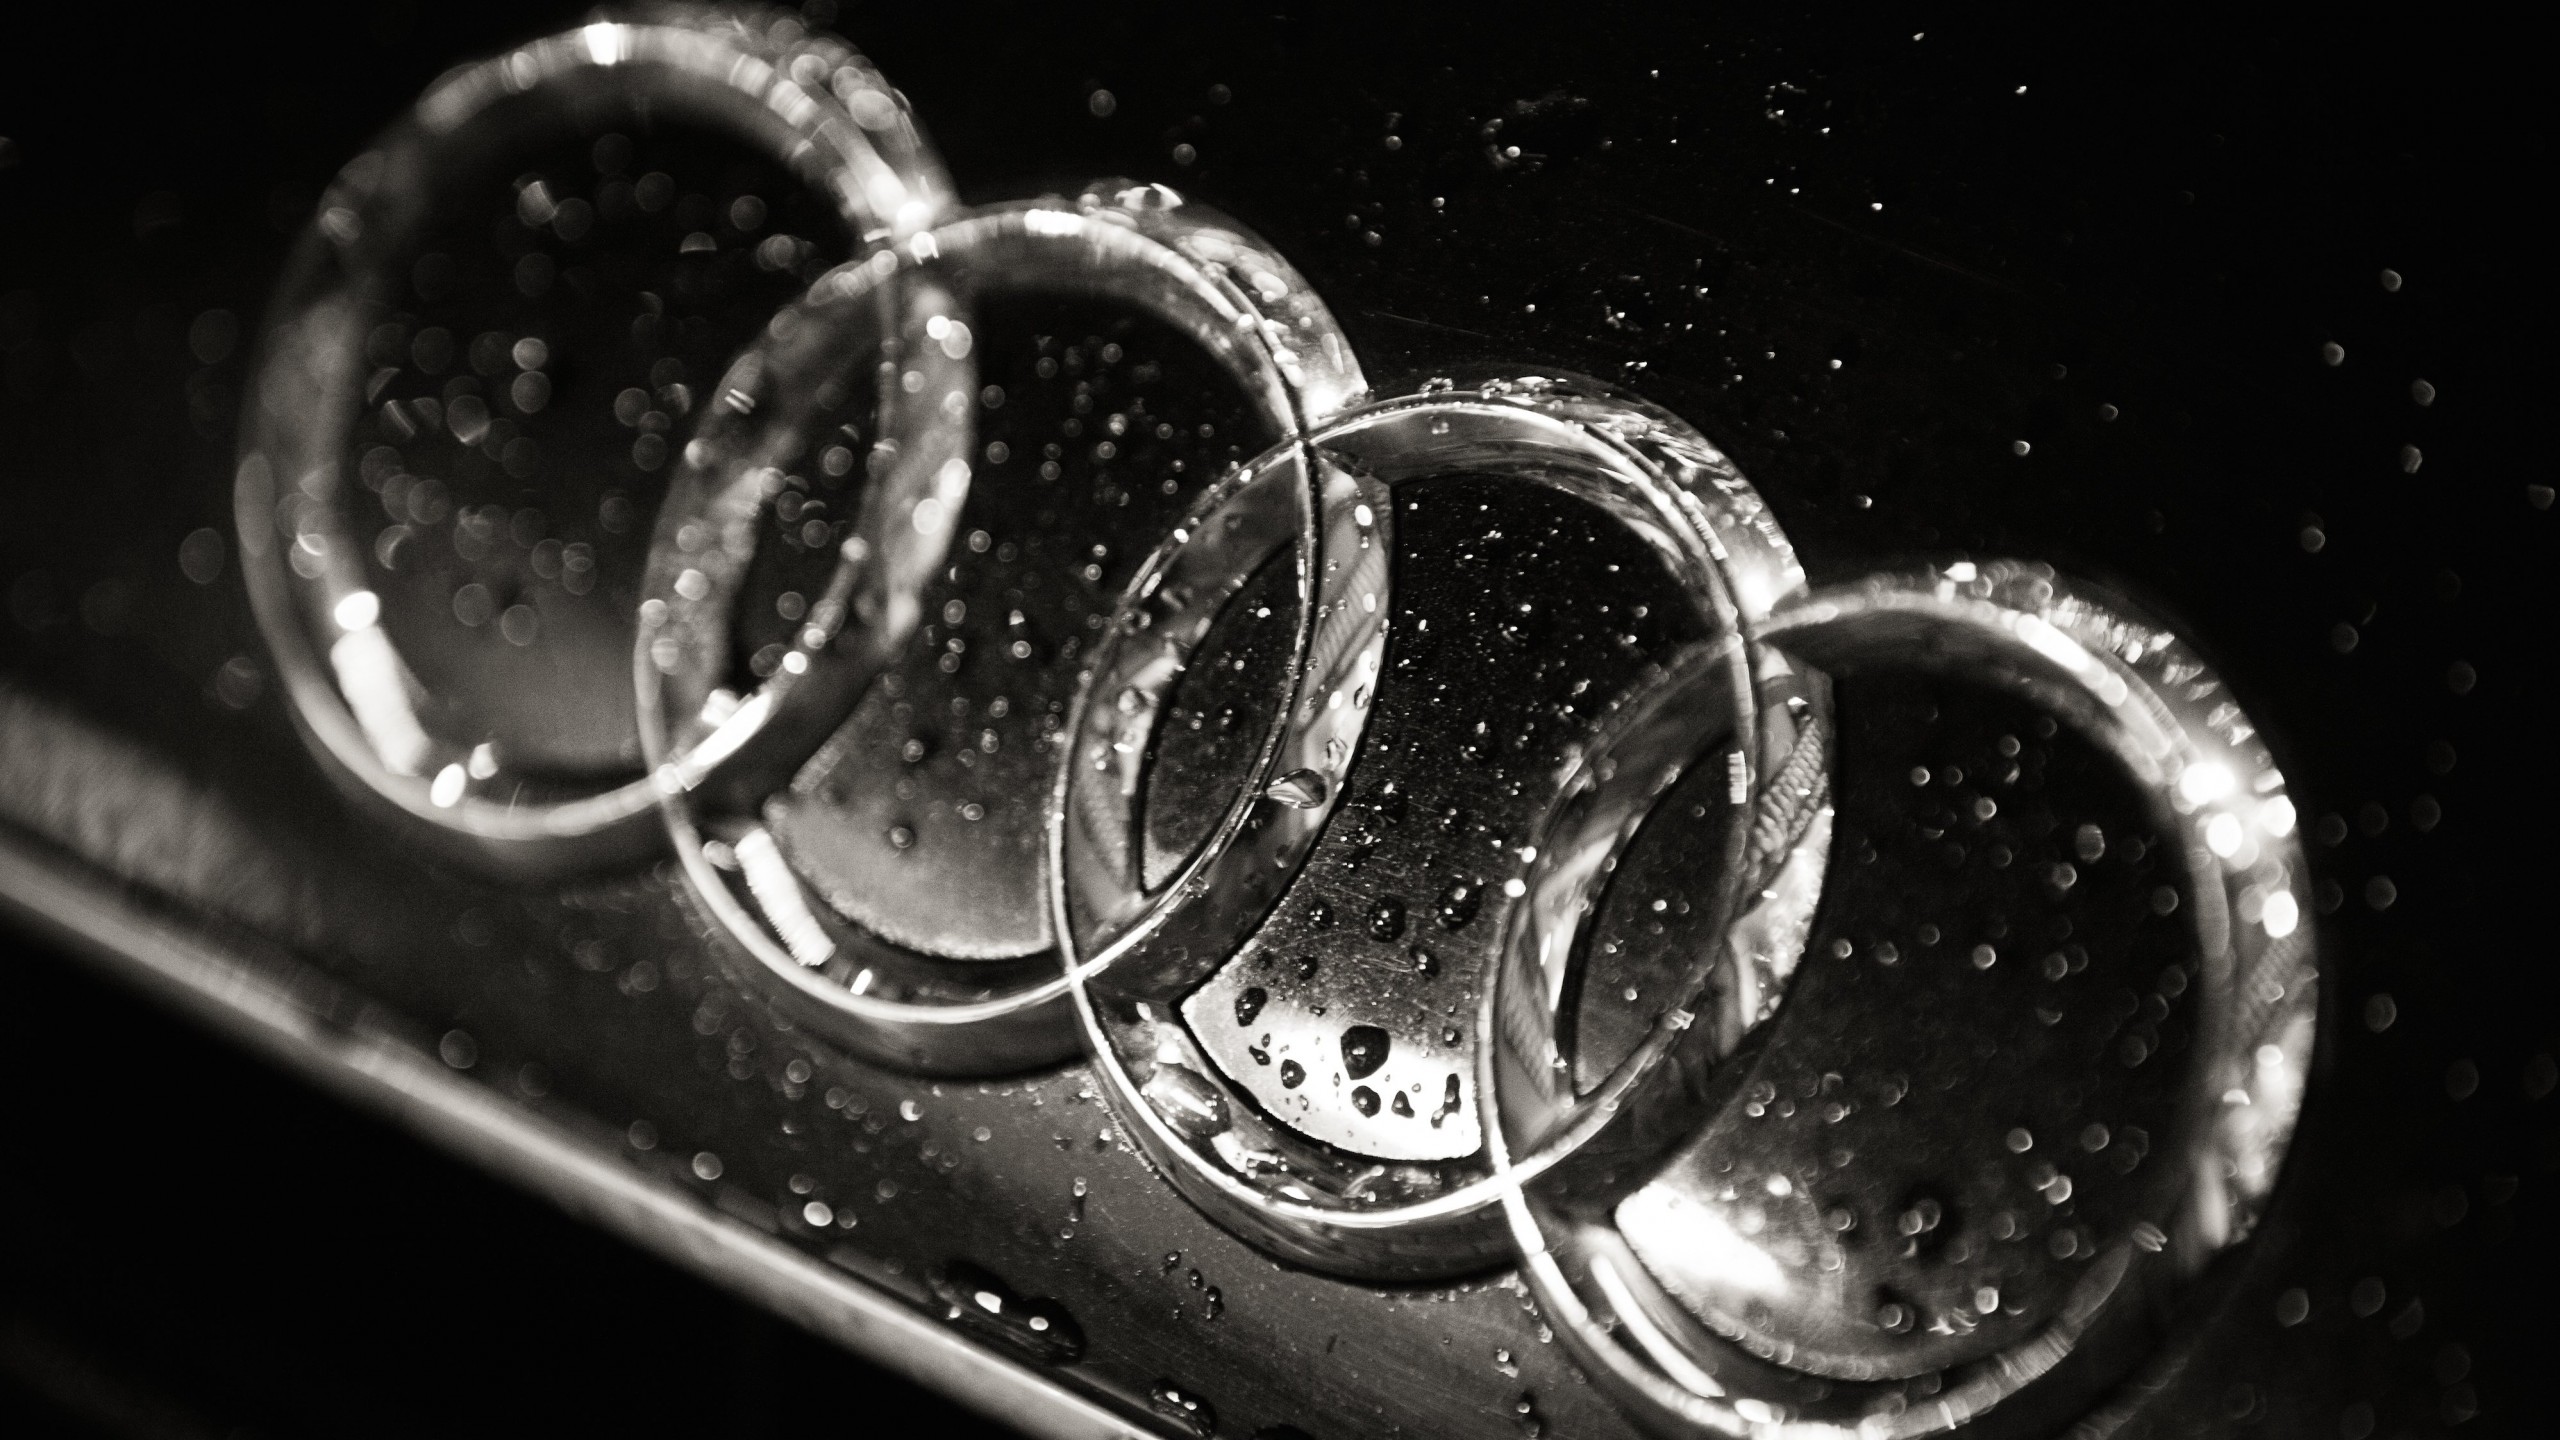 Audi Logo in Black & White Wallpaper for Social Media YouTube Channel Art